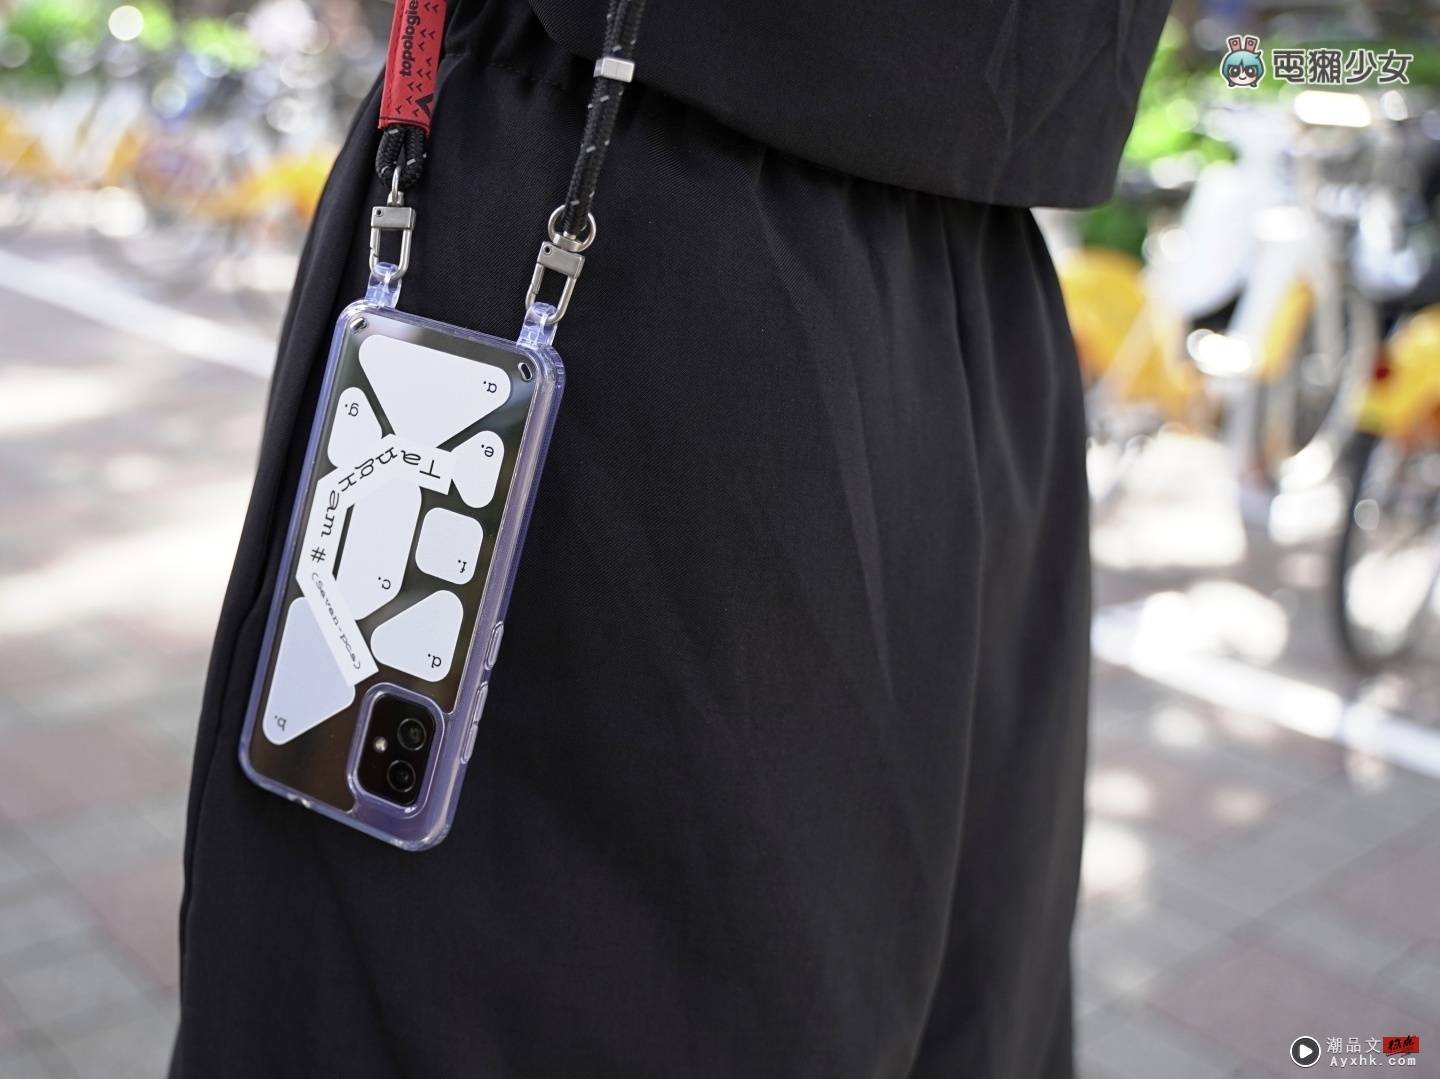 也太好看！Zenfone 8 设计师联名手机壳限量登场 搭配 Topologie 绳索背带时尚及便利性满分 数码科技 图9张